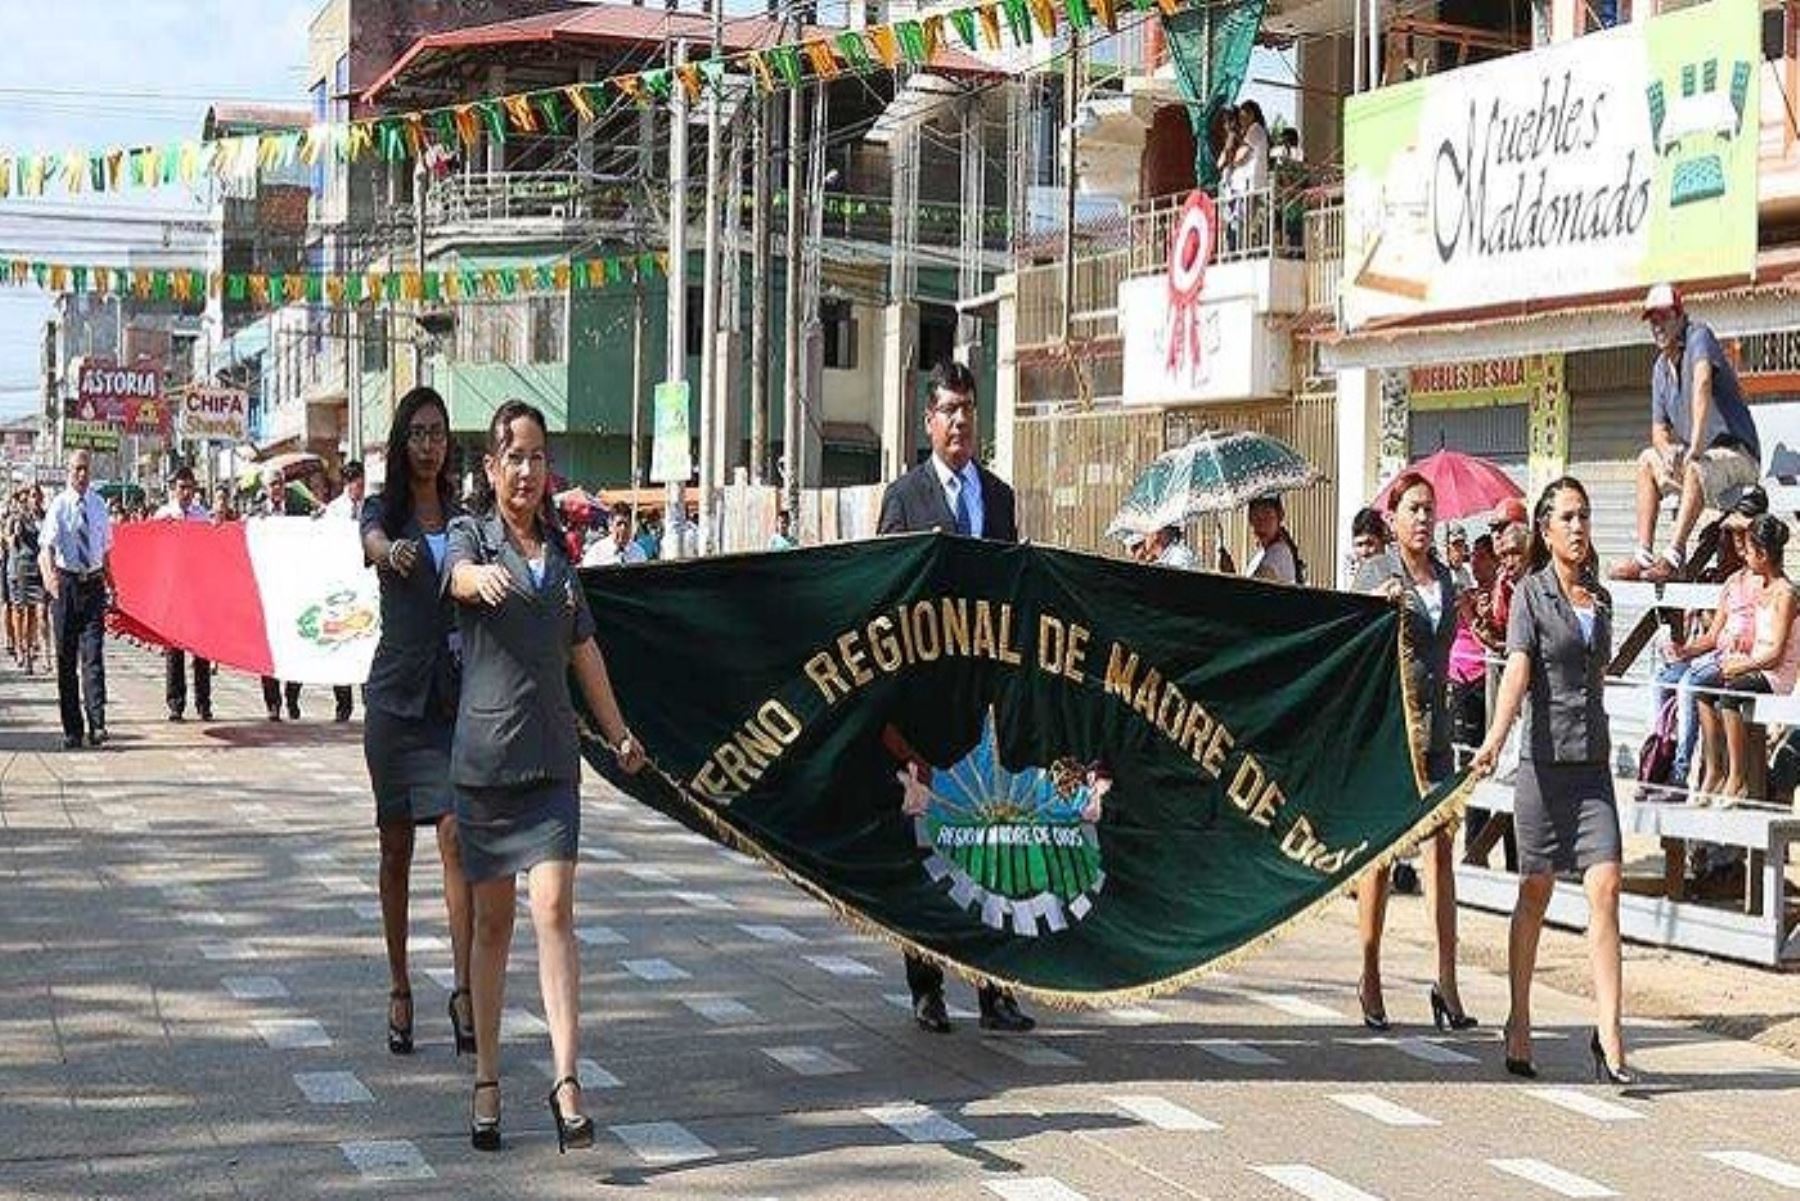 Gobernador regional de Madre de Dios, Luis Otsuka Salazar presidió los actos centrales, como el desfile de las autoridades políticas, militares, instituciones públicas y privadas, escolares y sociedad civil.